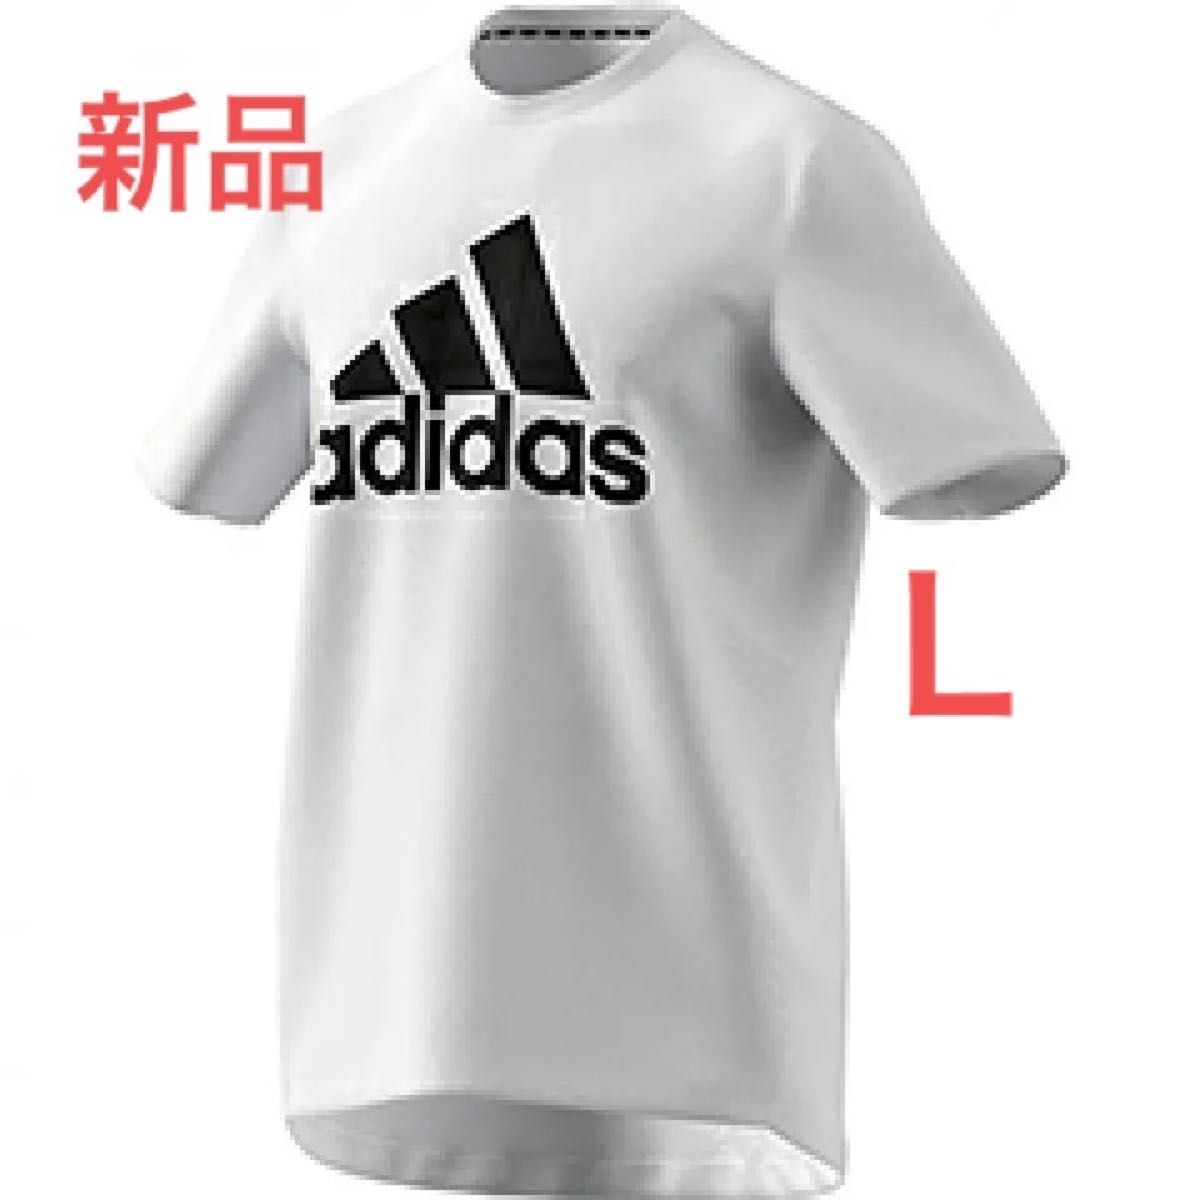 新品 L adidas アディダス M D2M FR LG Tシャツ ホワイト デカロゴ インパクト大 レズミルズレッスンにも